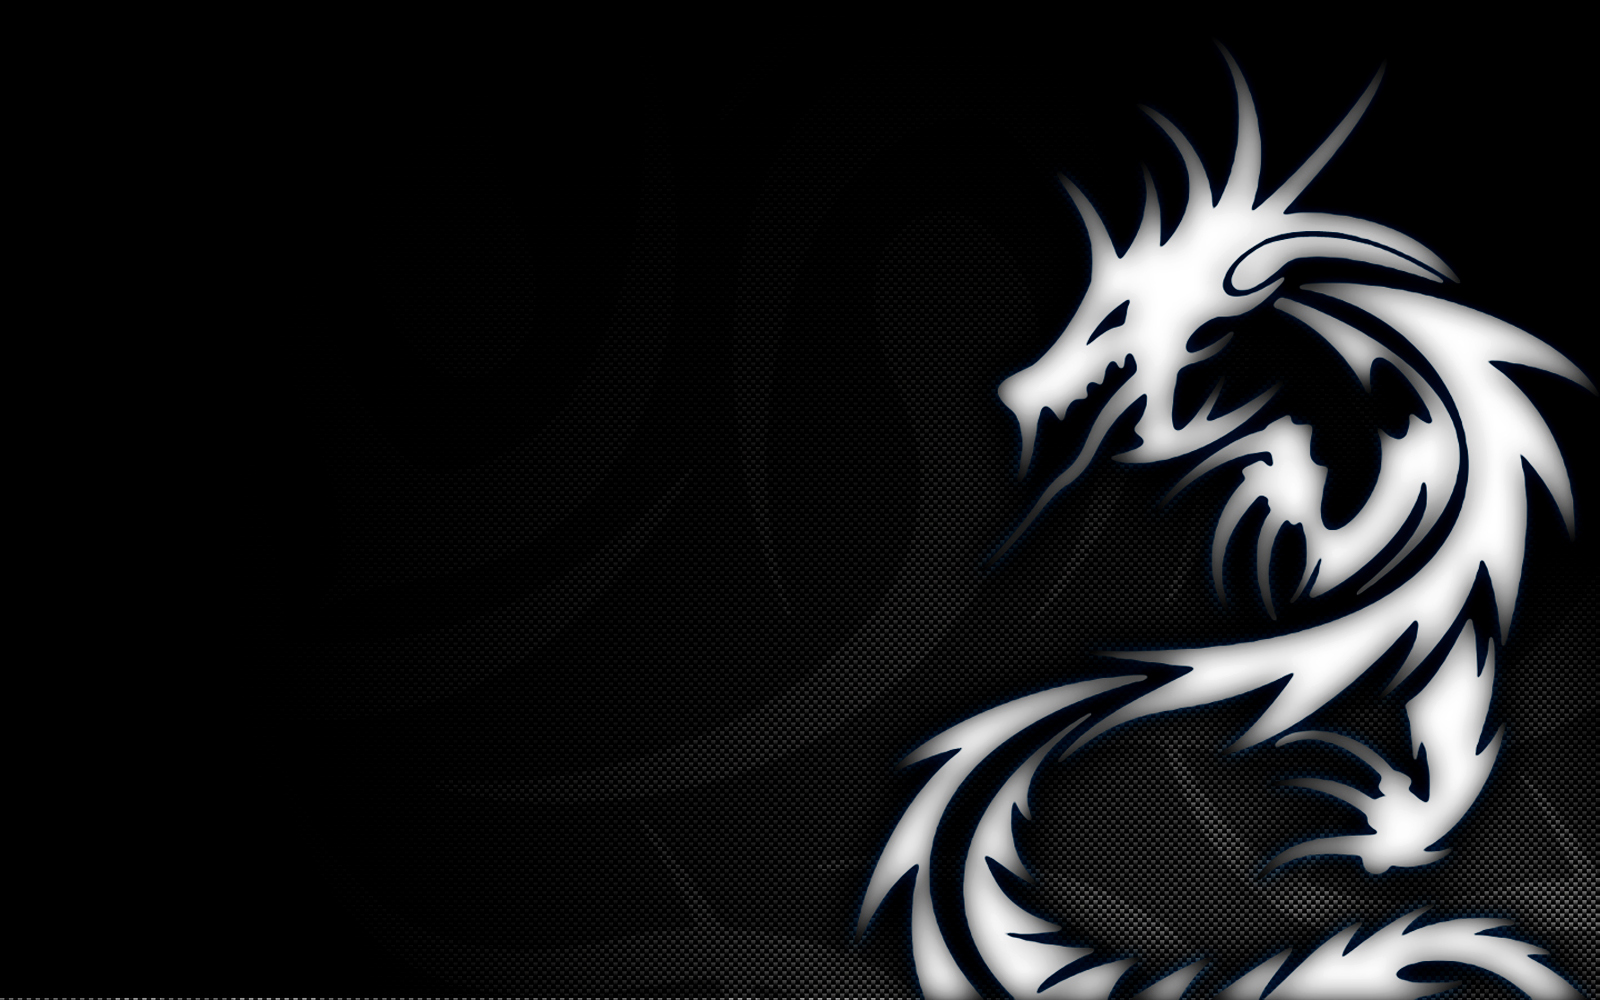 création de logo de papier peint,noir,dragon,noir et blanc,personnage fictif,conception graphique